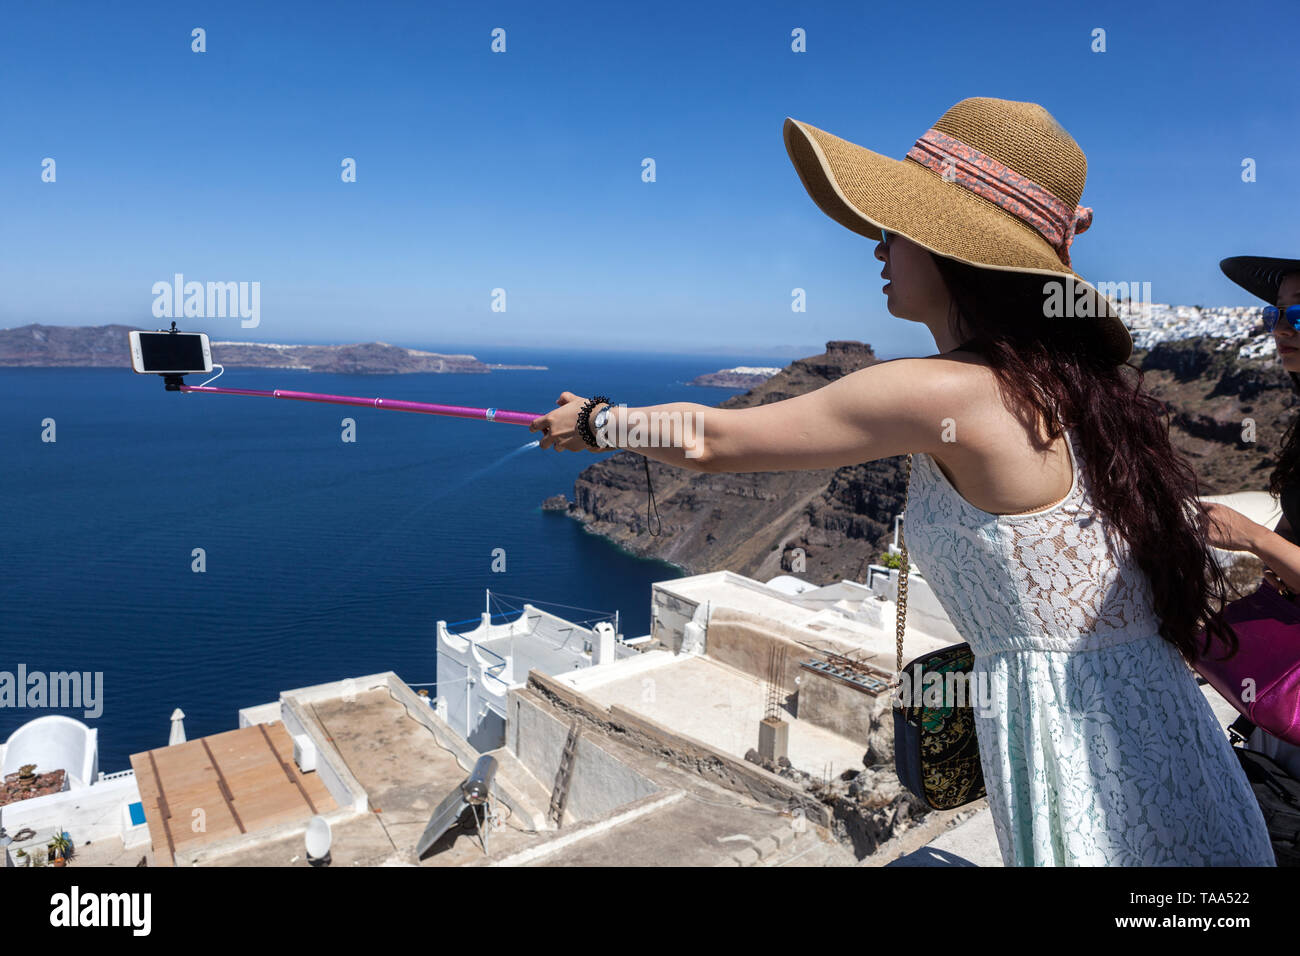 Grèce Santorini gens touristes, jeune femme asiatique faisant la photo, selfie au-dessus de caldera Europe Banque D'Images